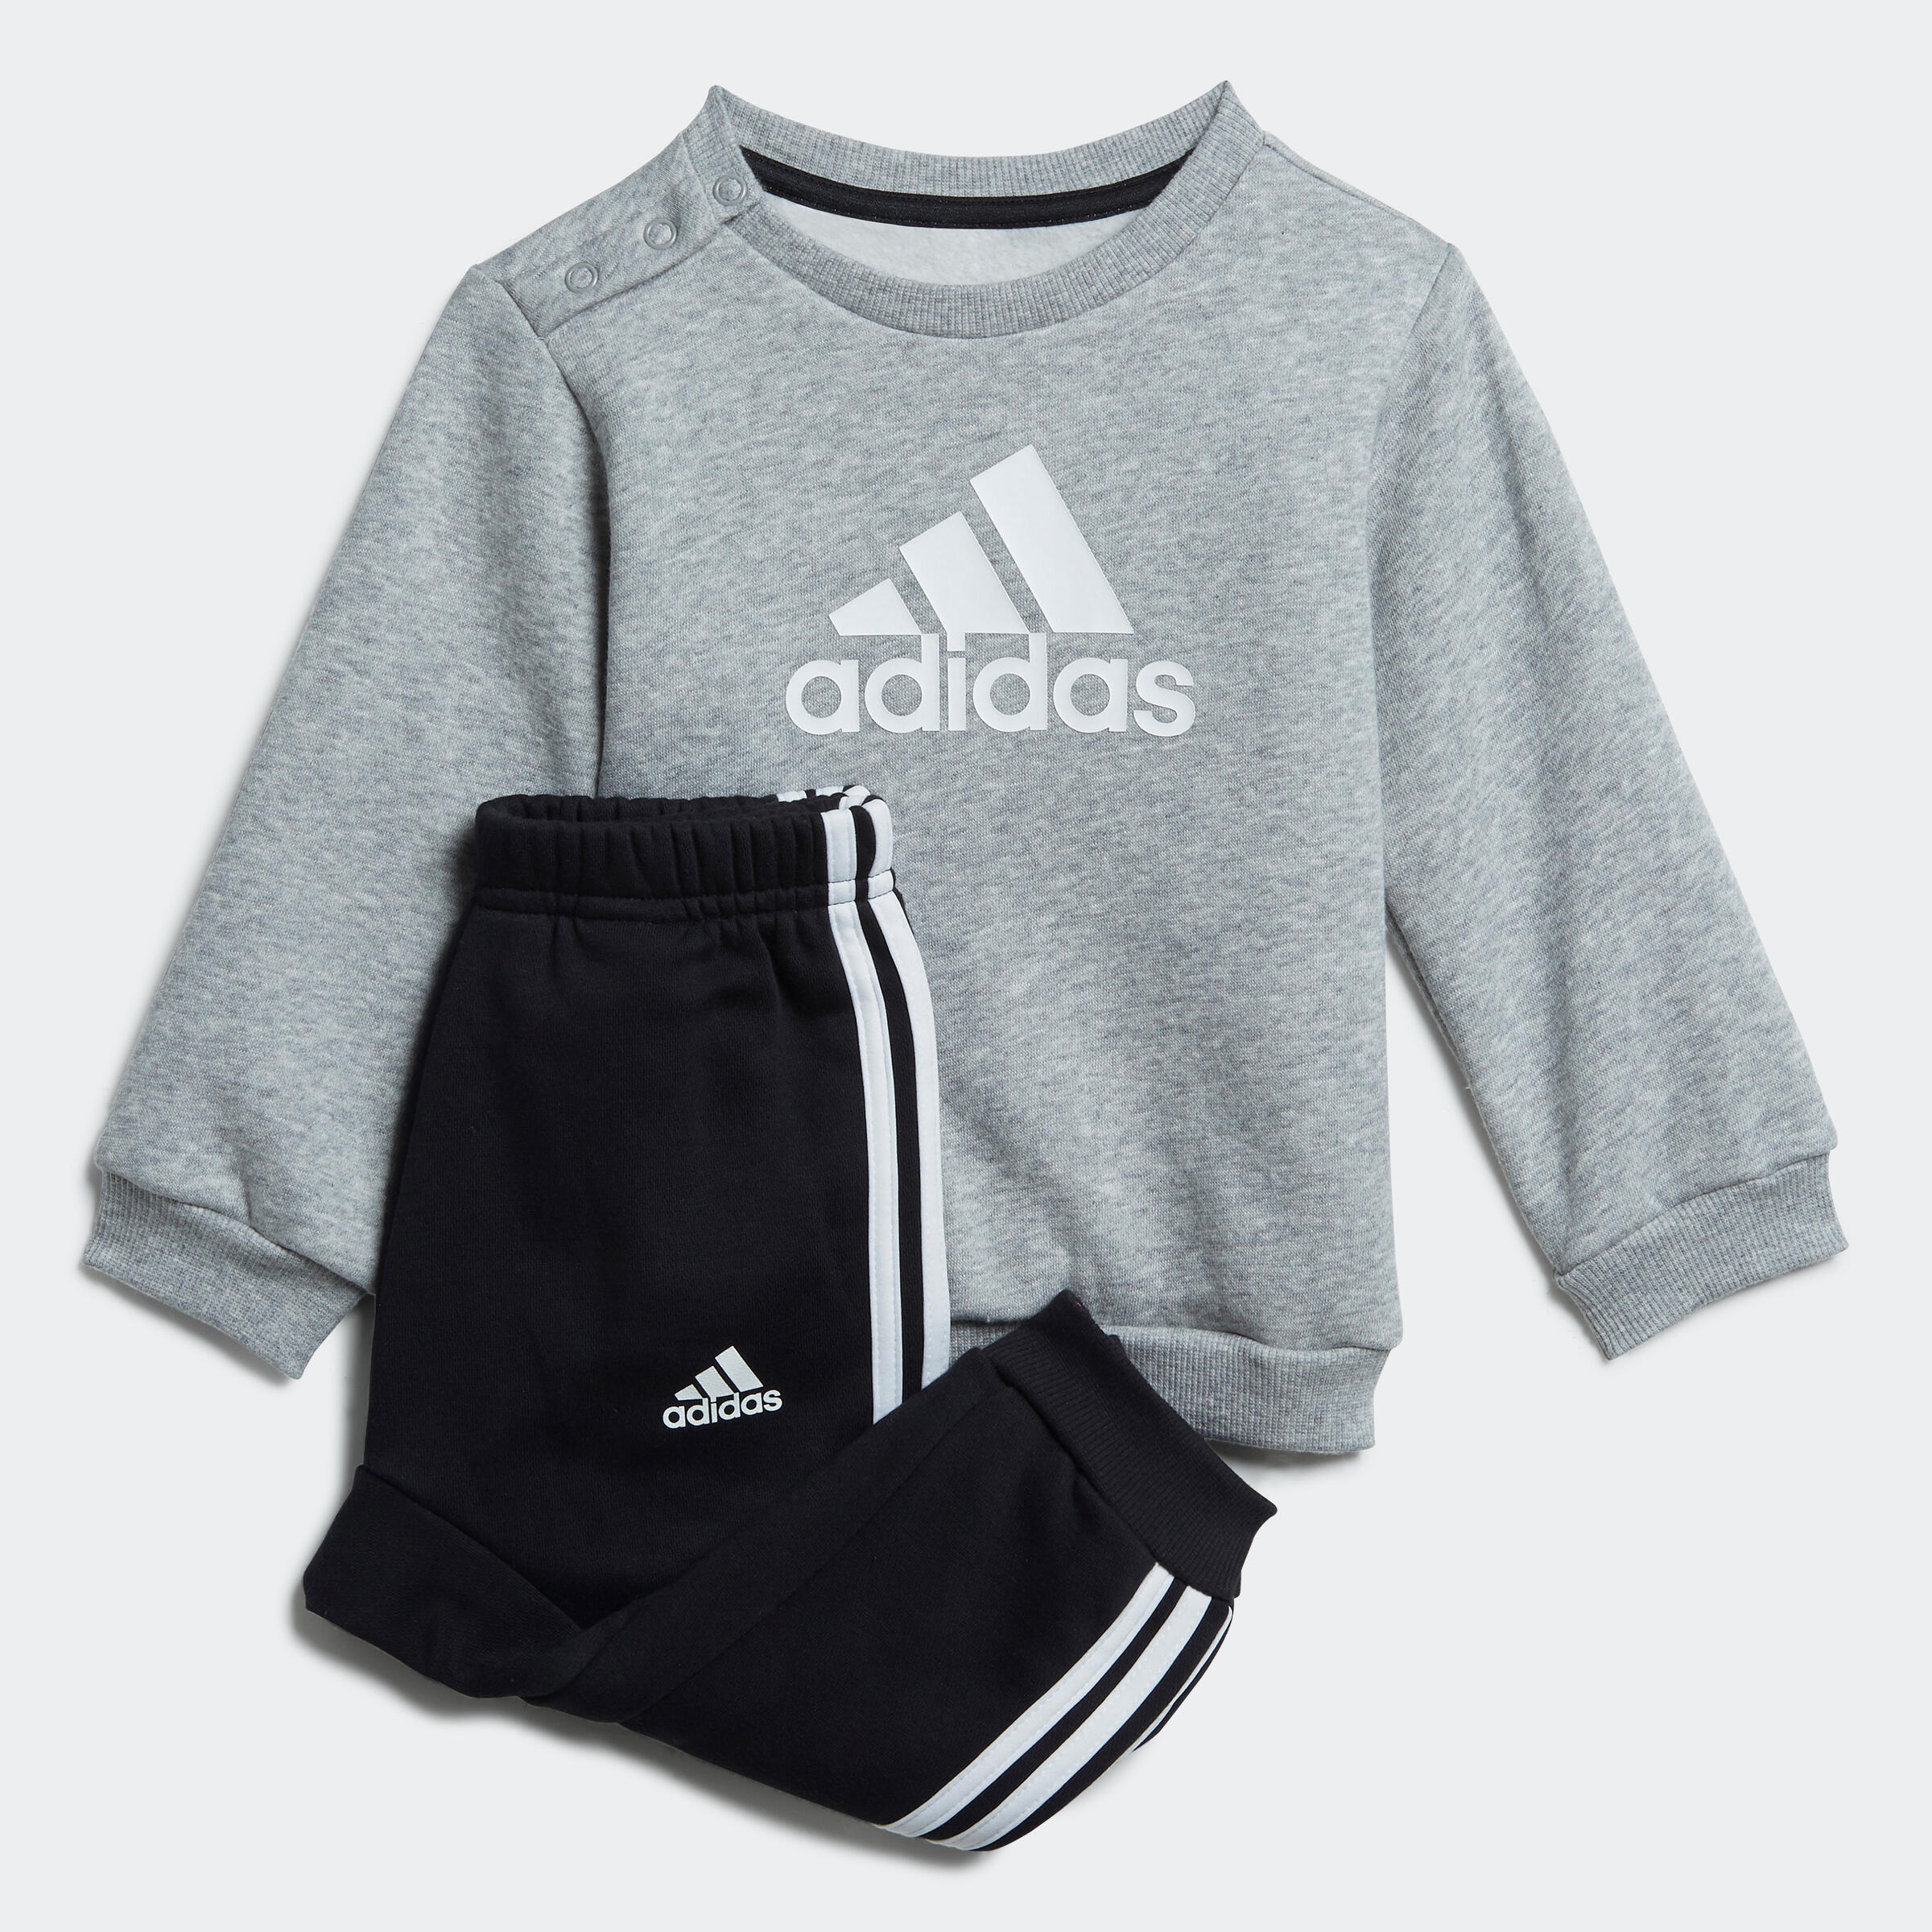 Decathlon | Tuta baby ginnastica ADIDAS misto cotone felpato grigio-nero |  Adidas